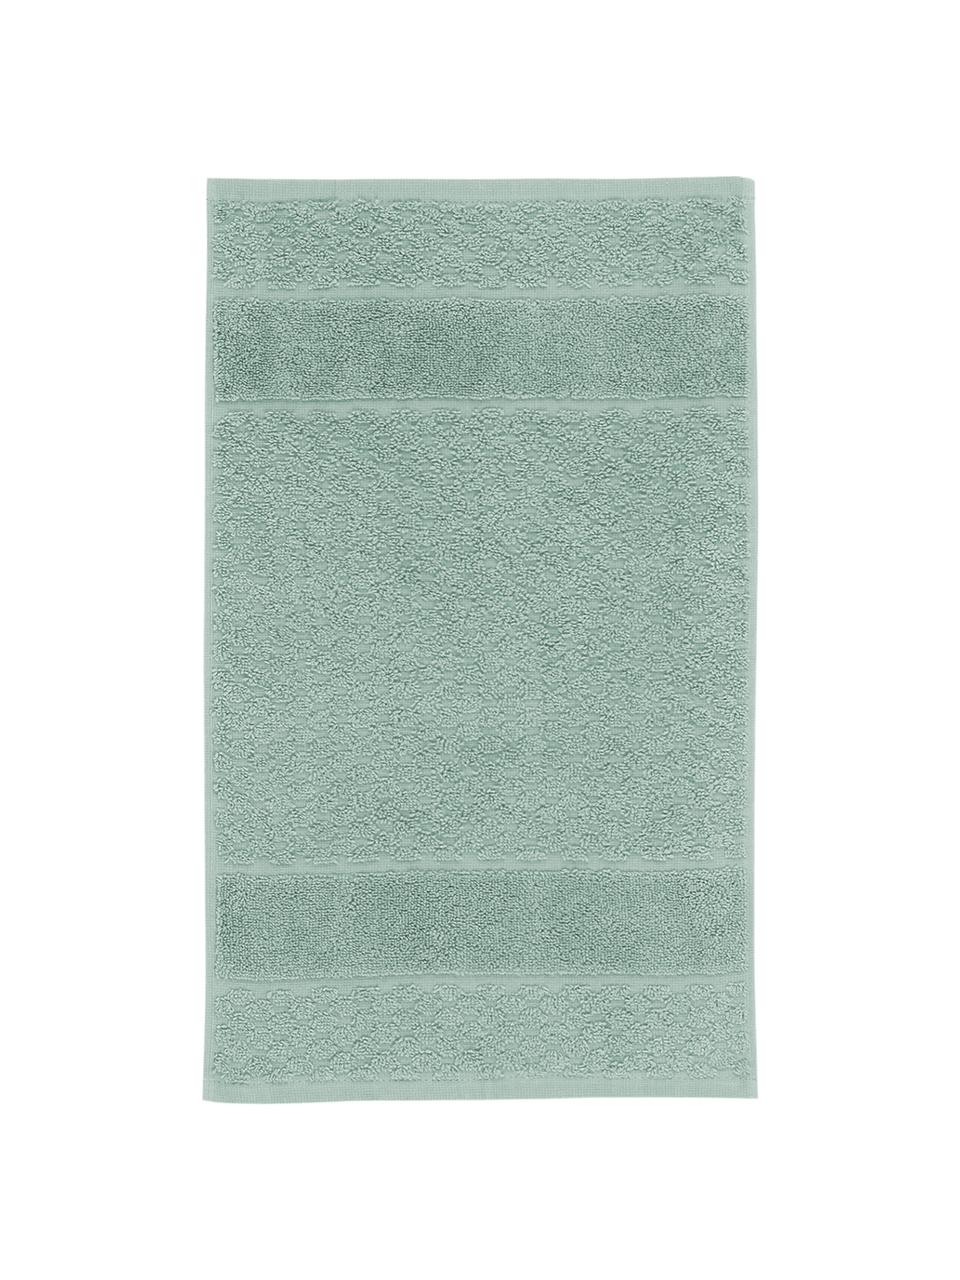 Handdoek Katharina in verschillende formaten, met honingraatpatroon, Mintgroen, Handdoek, B 50 x L 100 cm, 2 stuks